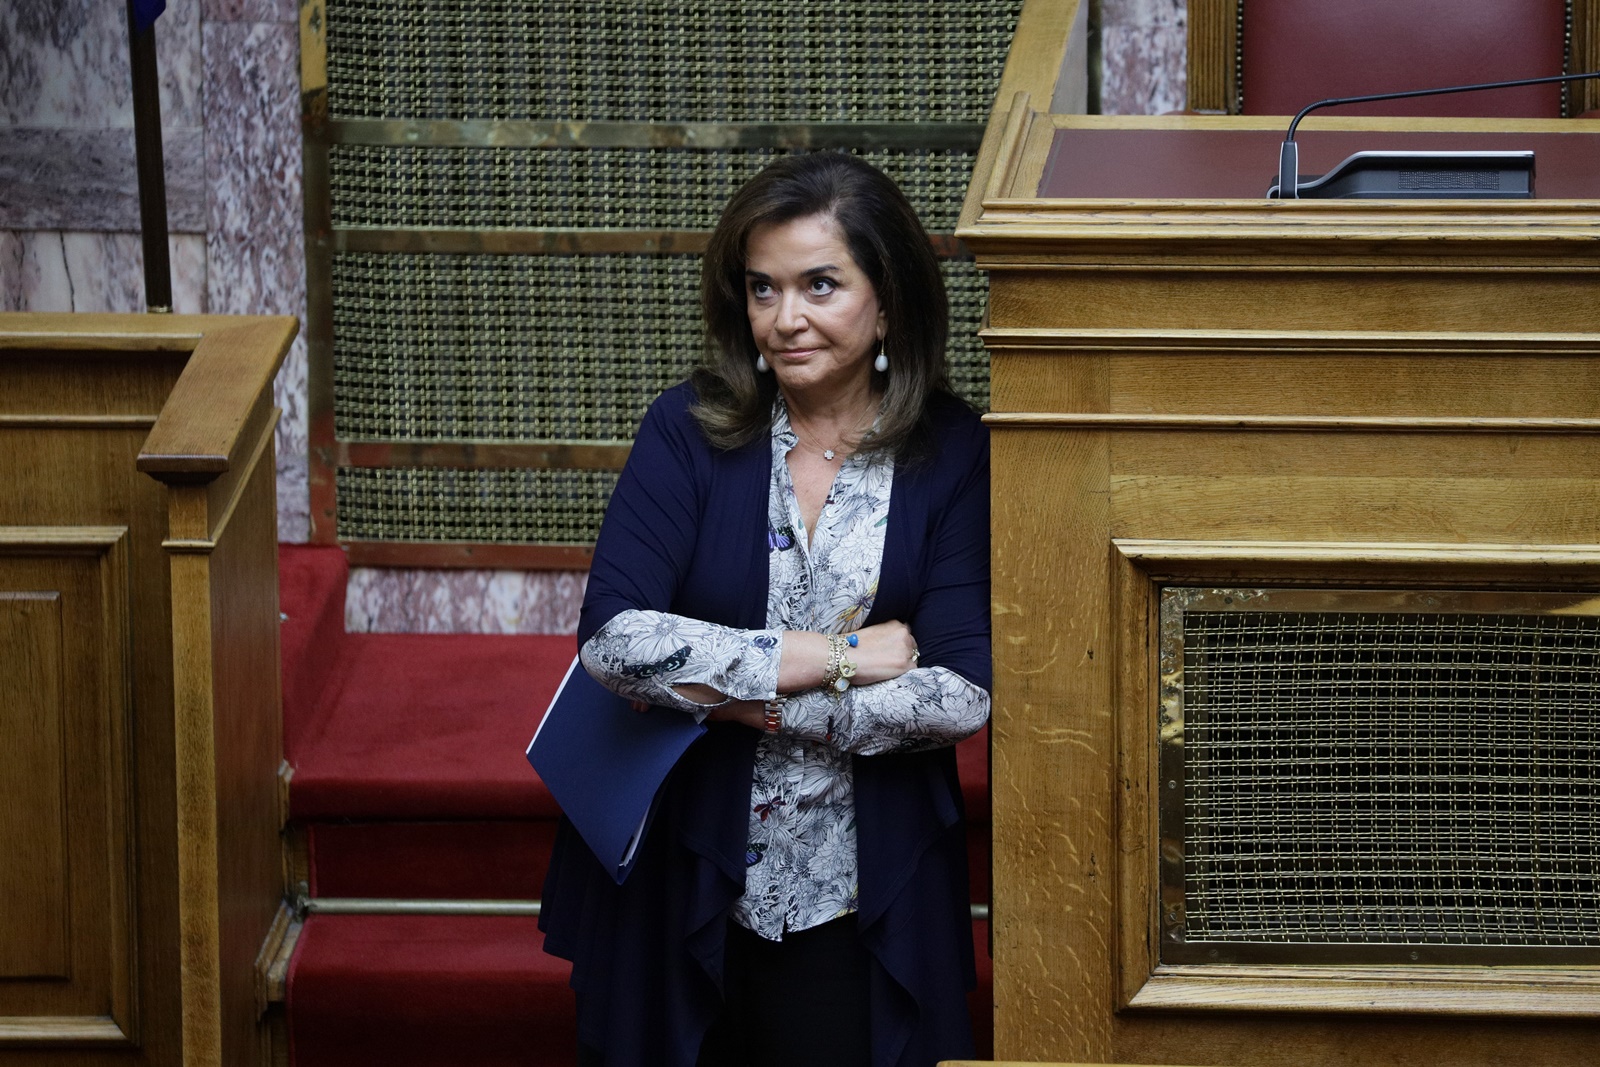 ΣΥΡΙΖΑ εξελίξεις: “Το κόμμα πάει για διάλυση”, λέει η Ντόρα